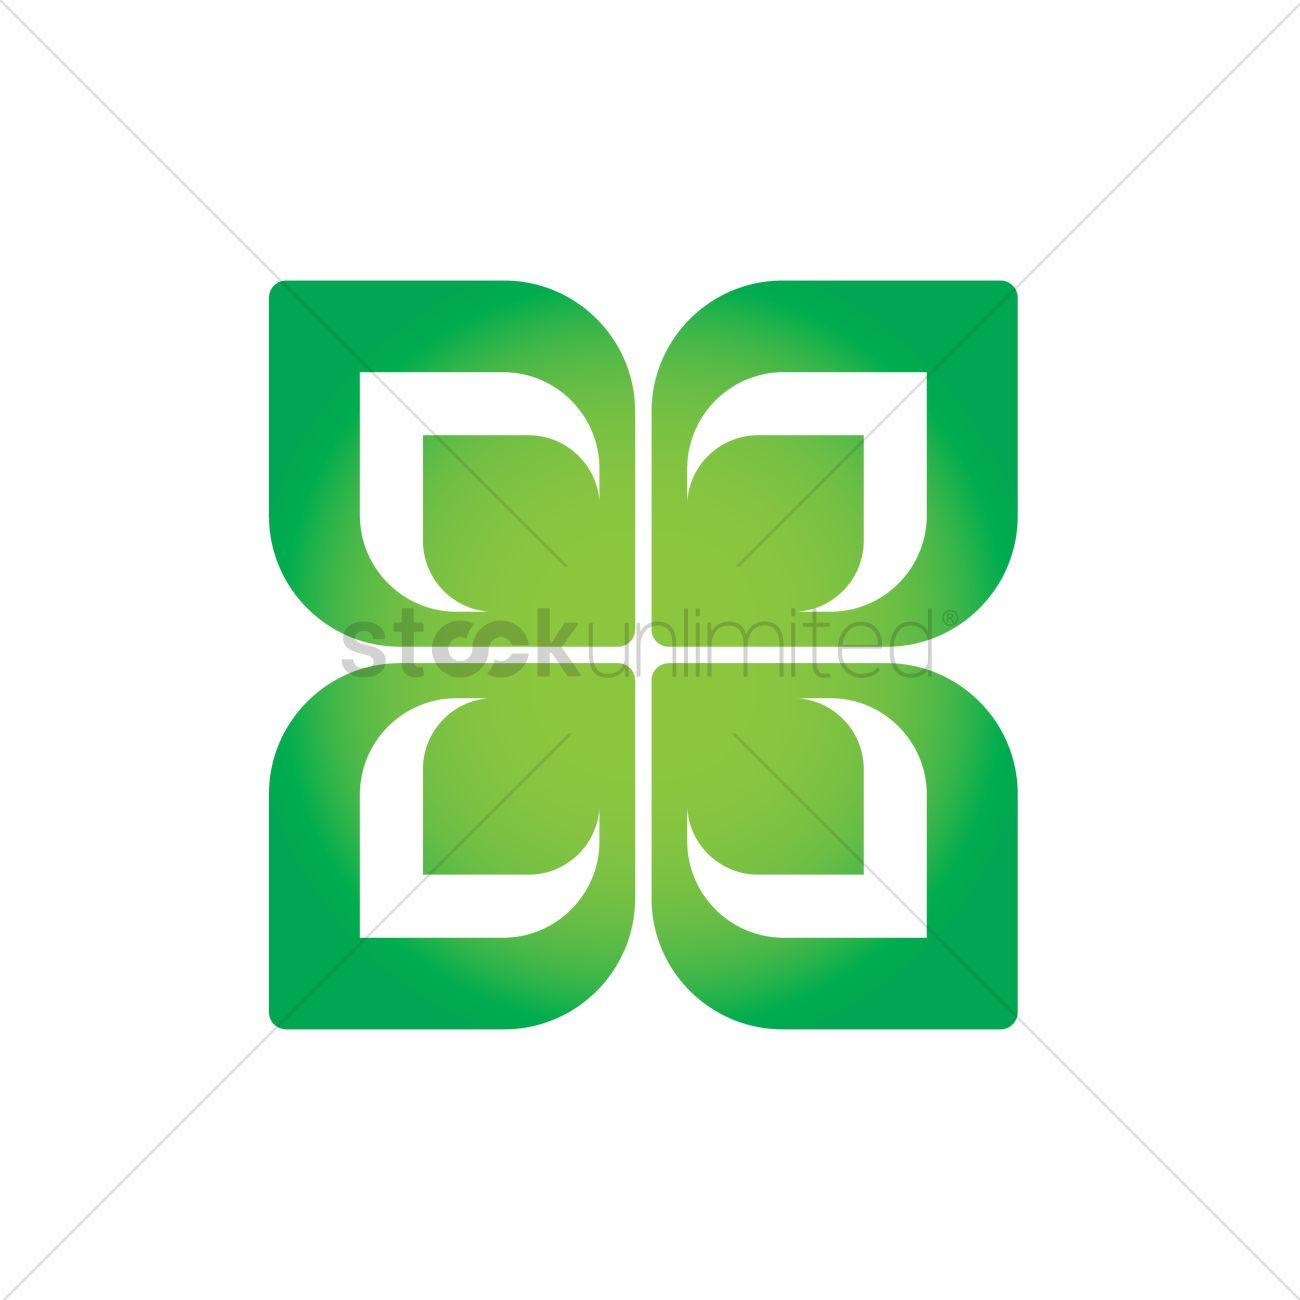 Christian Flower Logo - Flower logo element Vector Image - 1629208 | StockUnlimited